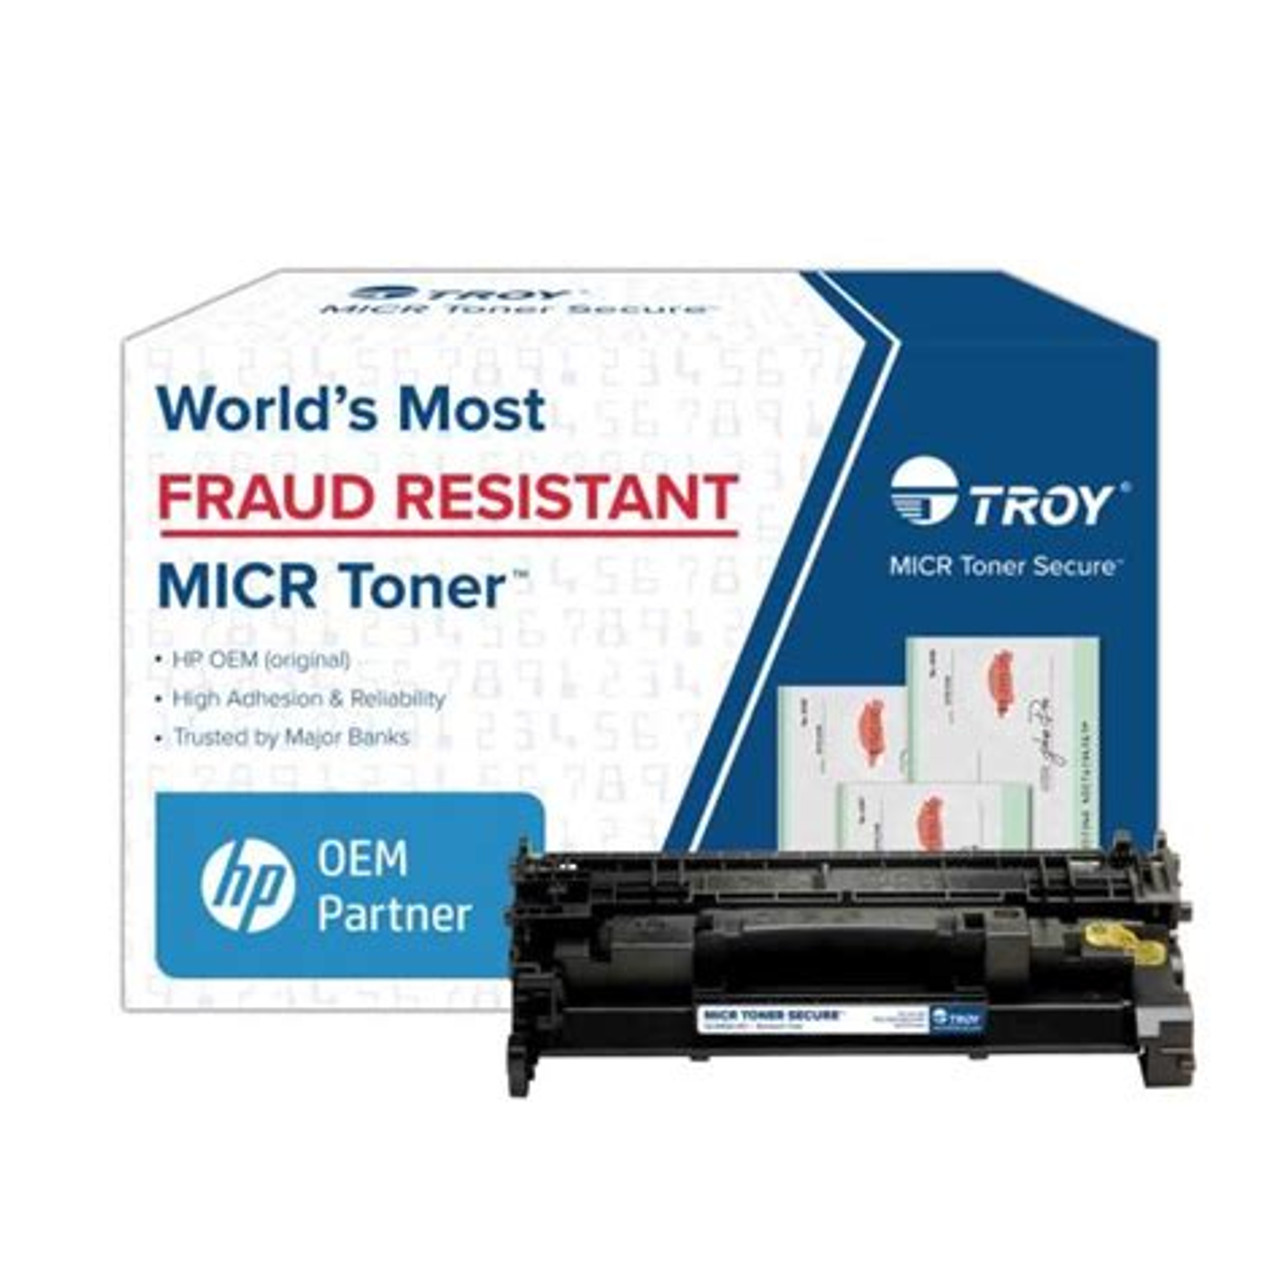 TROY M507dn MICR Printer